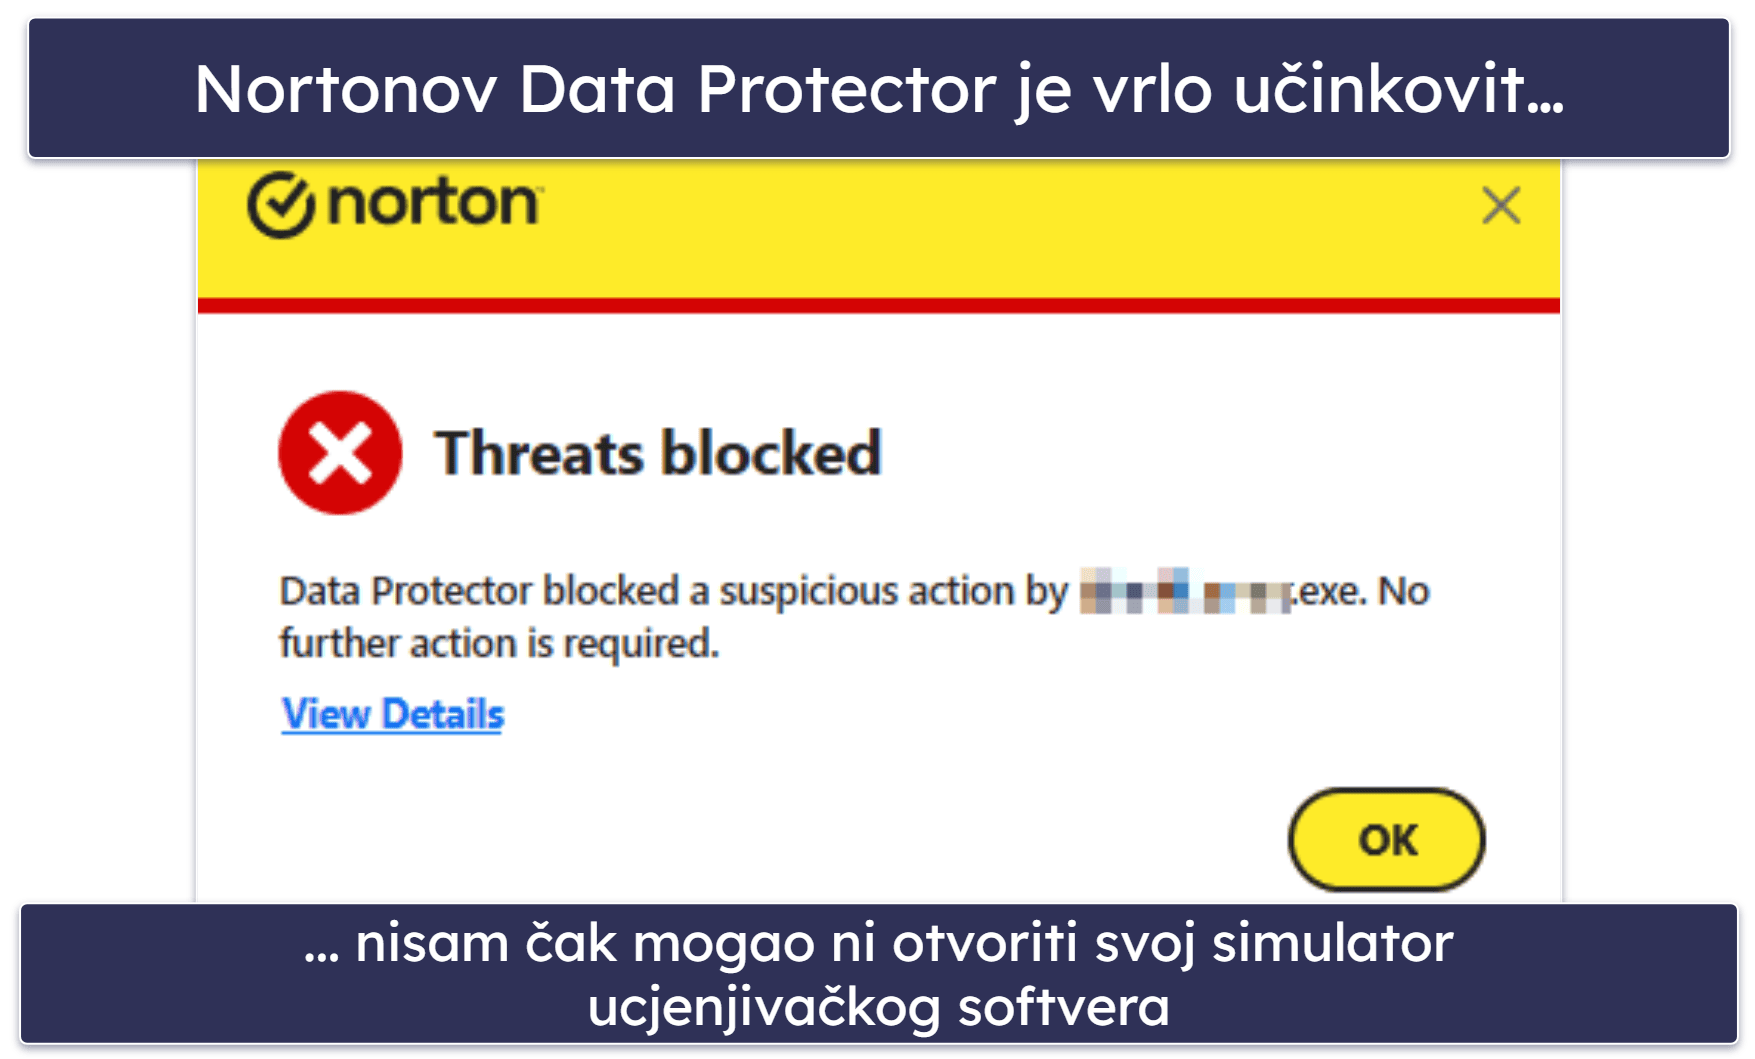 Nortonove značajke sigurnosti